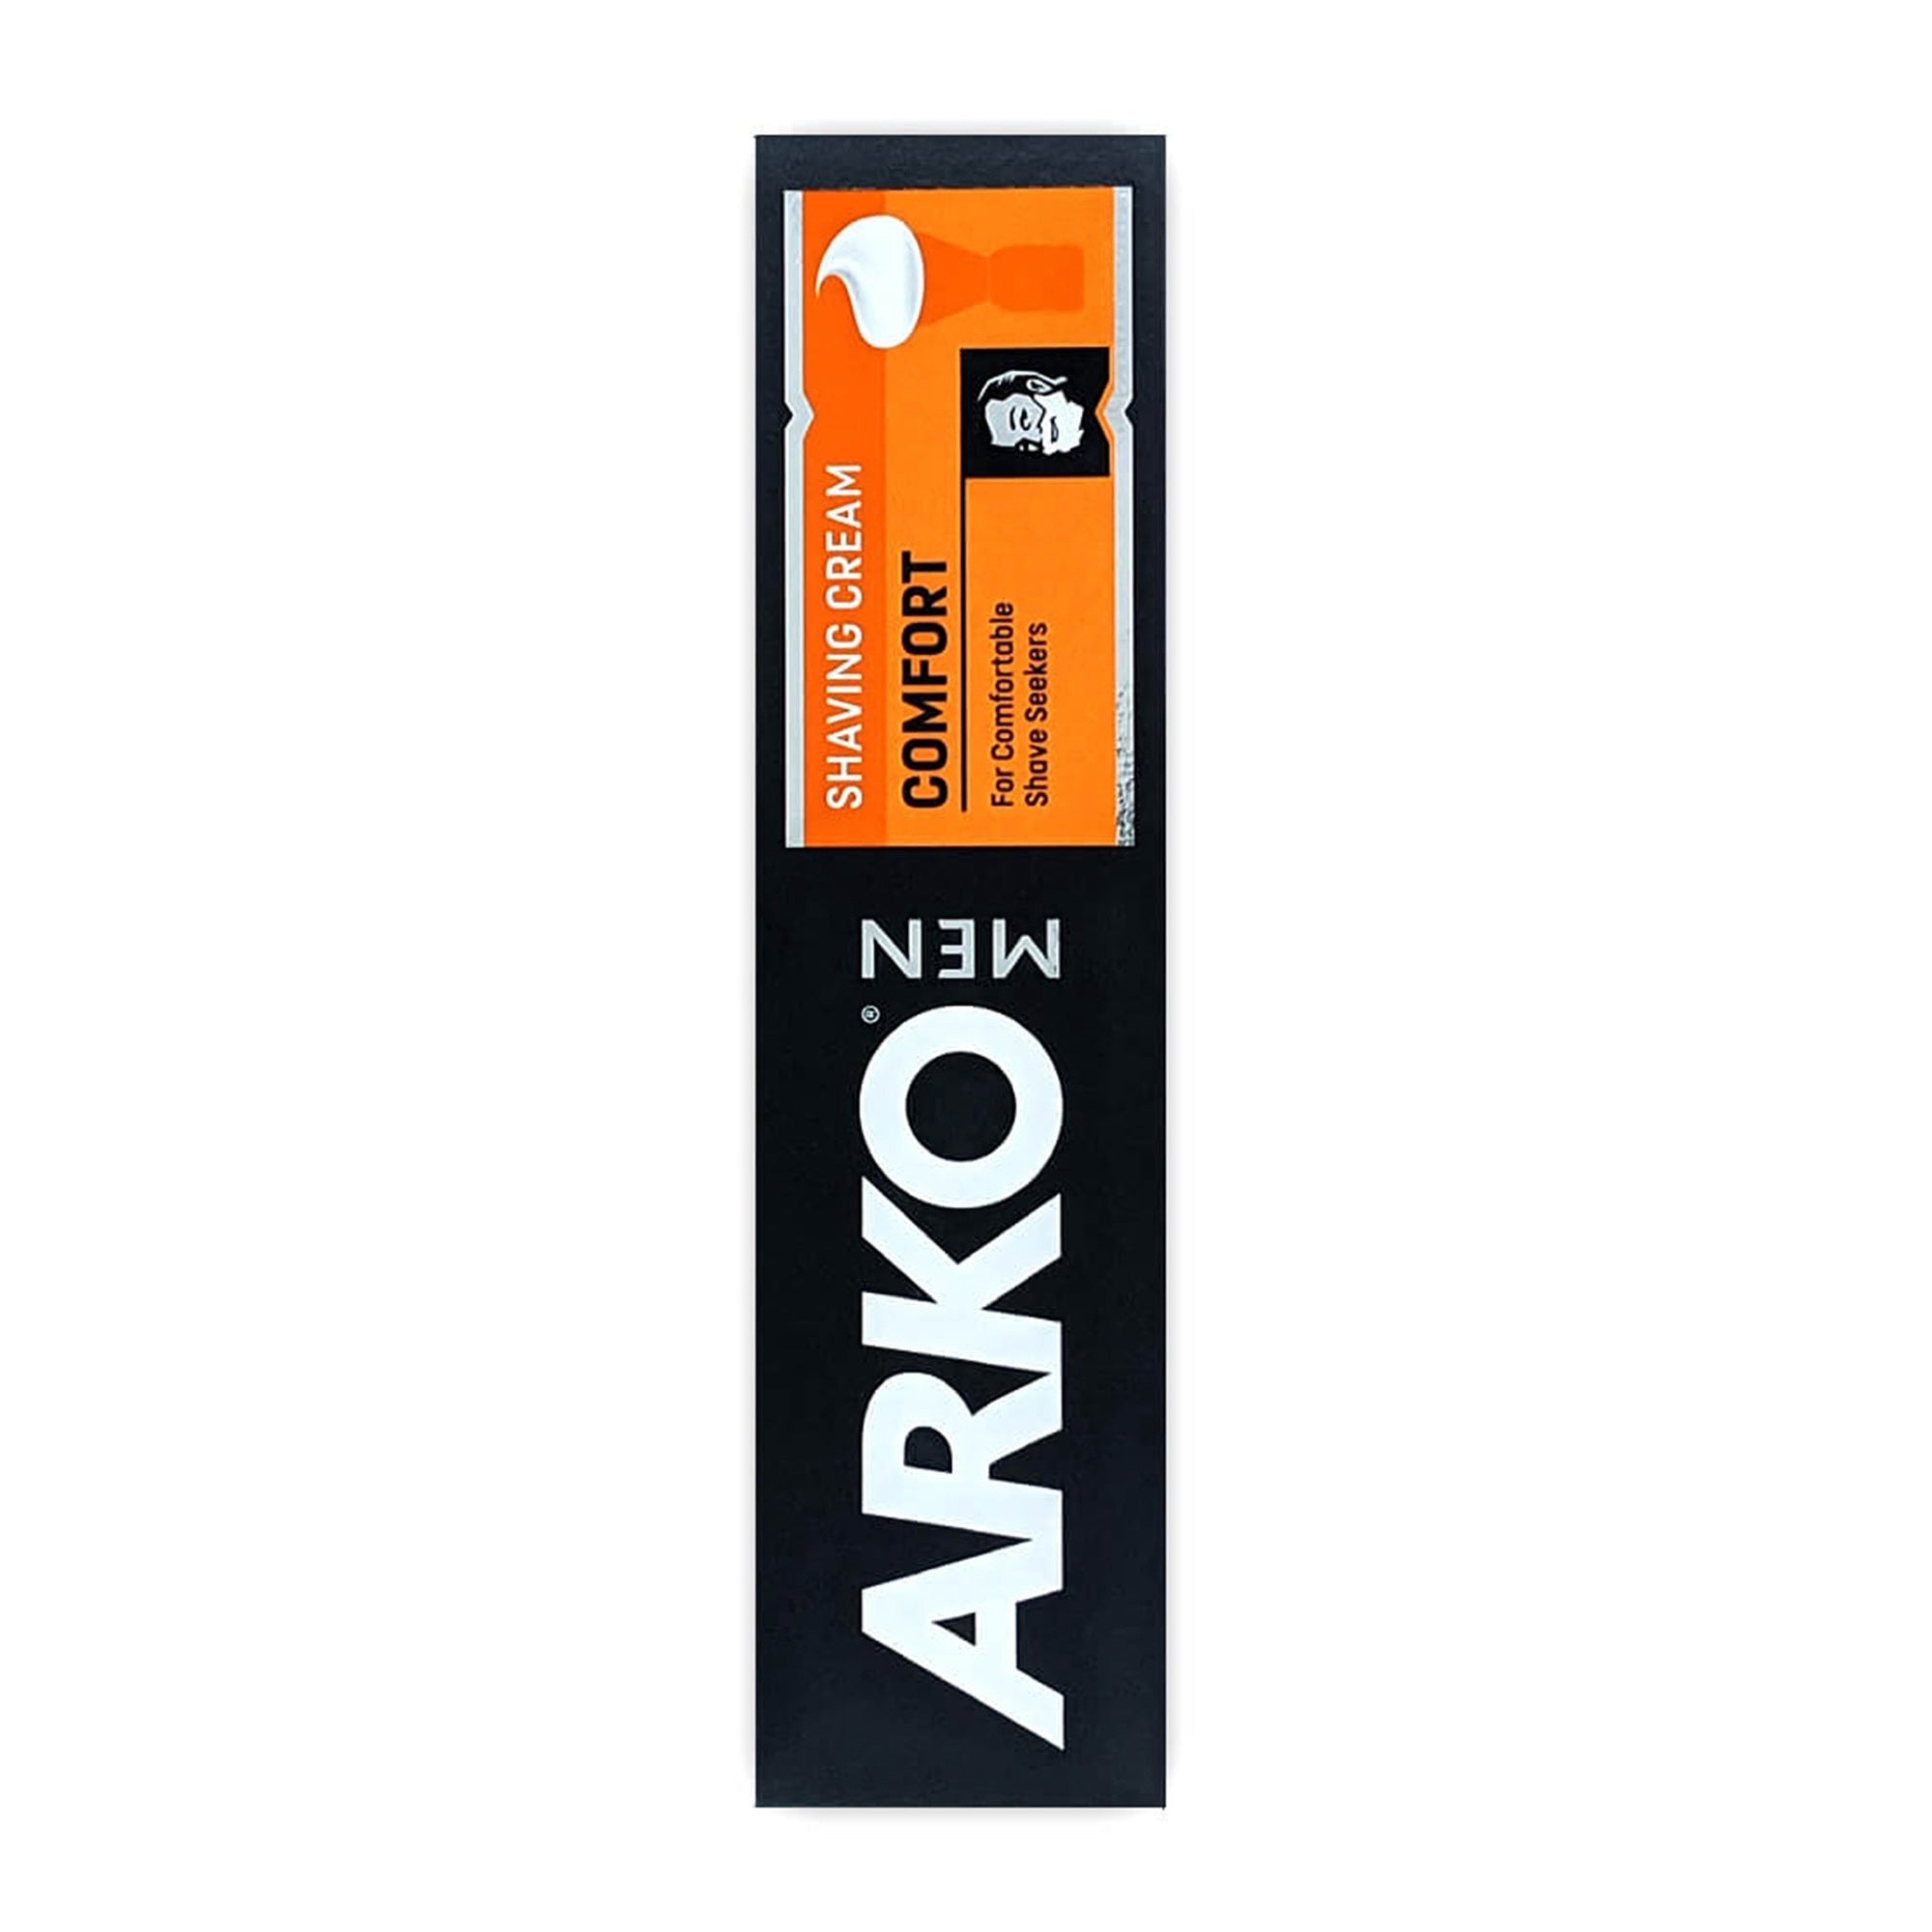 Arko - Men Shaving Cream Comfort 100g - Eson Direct